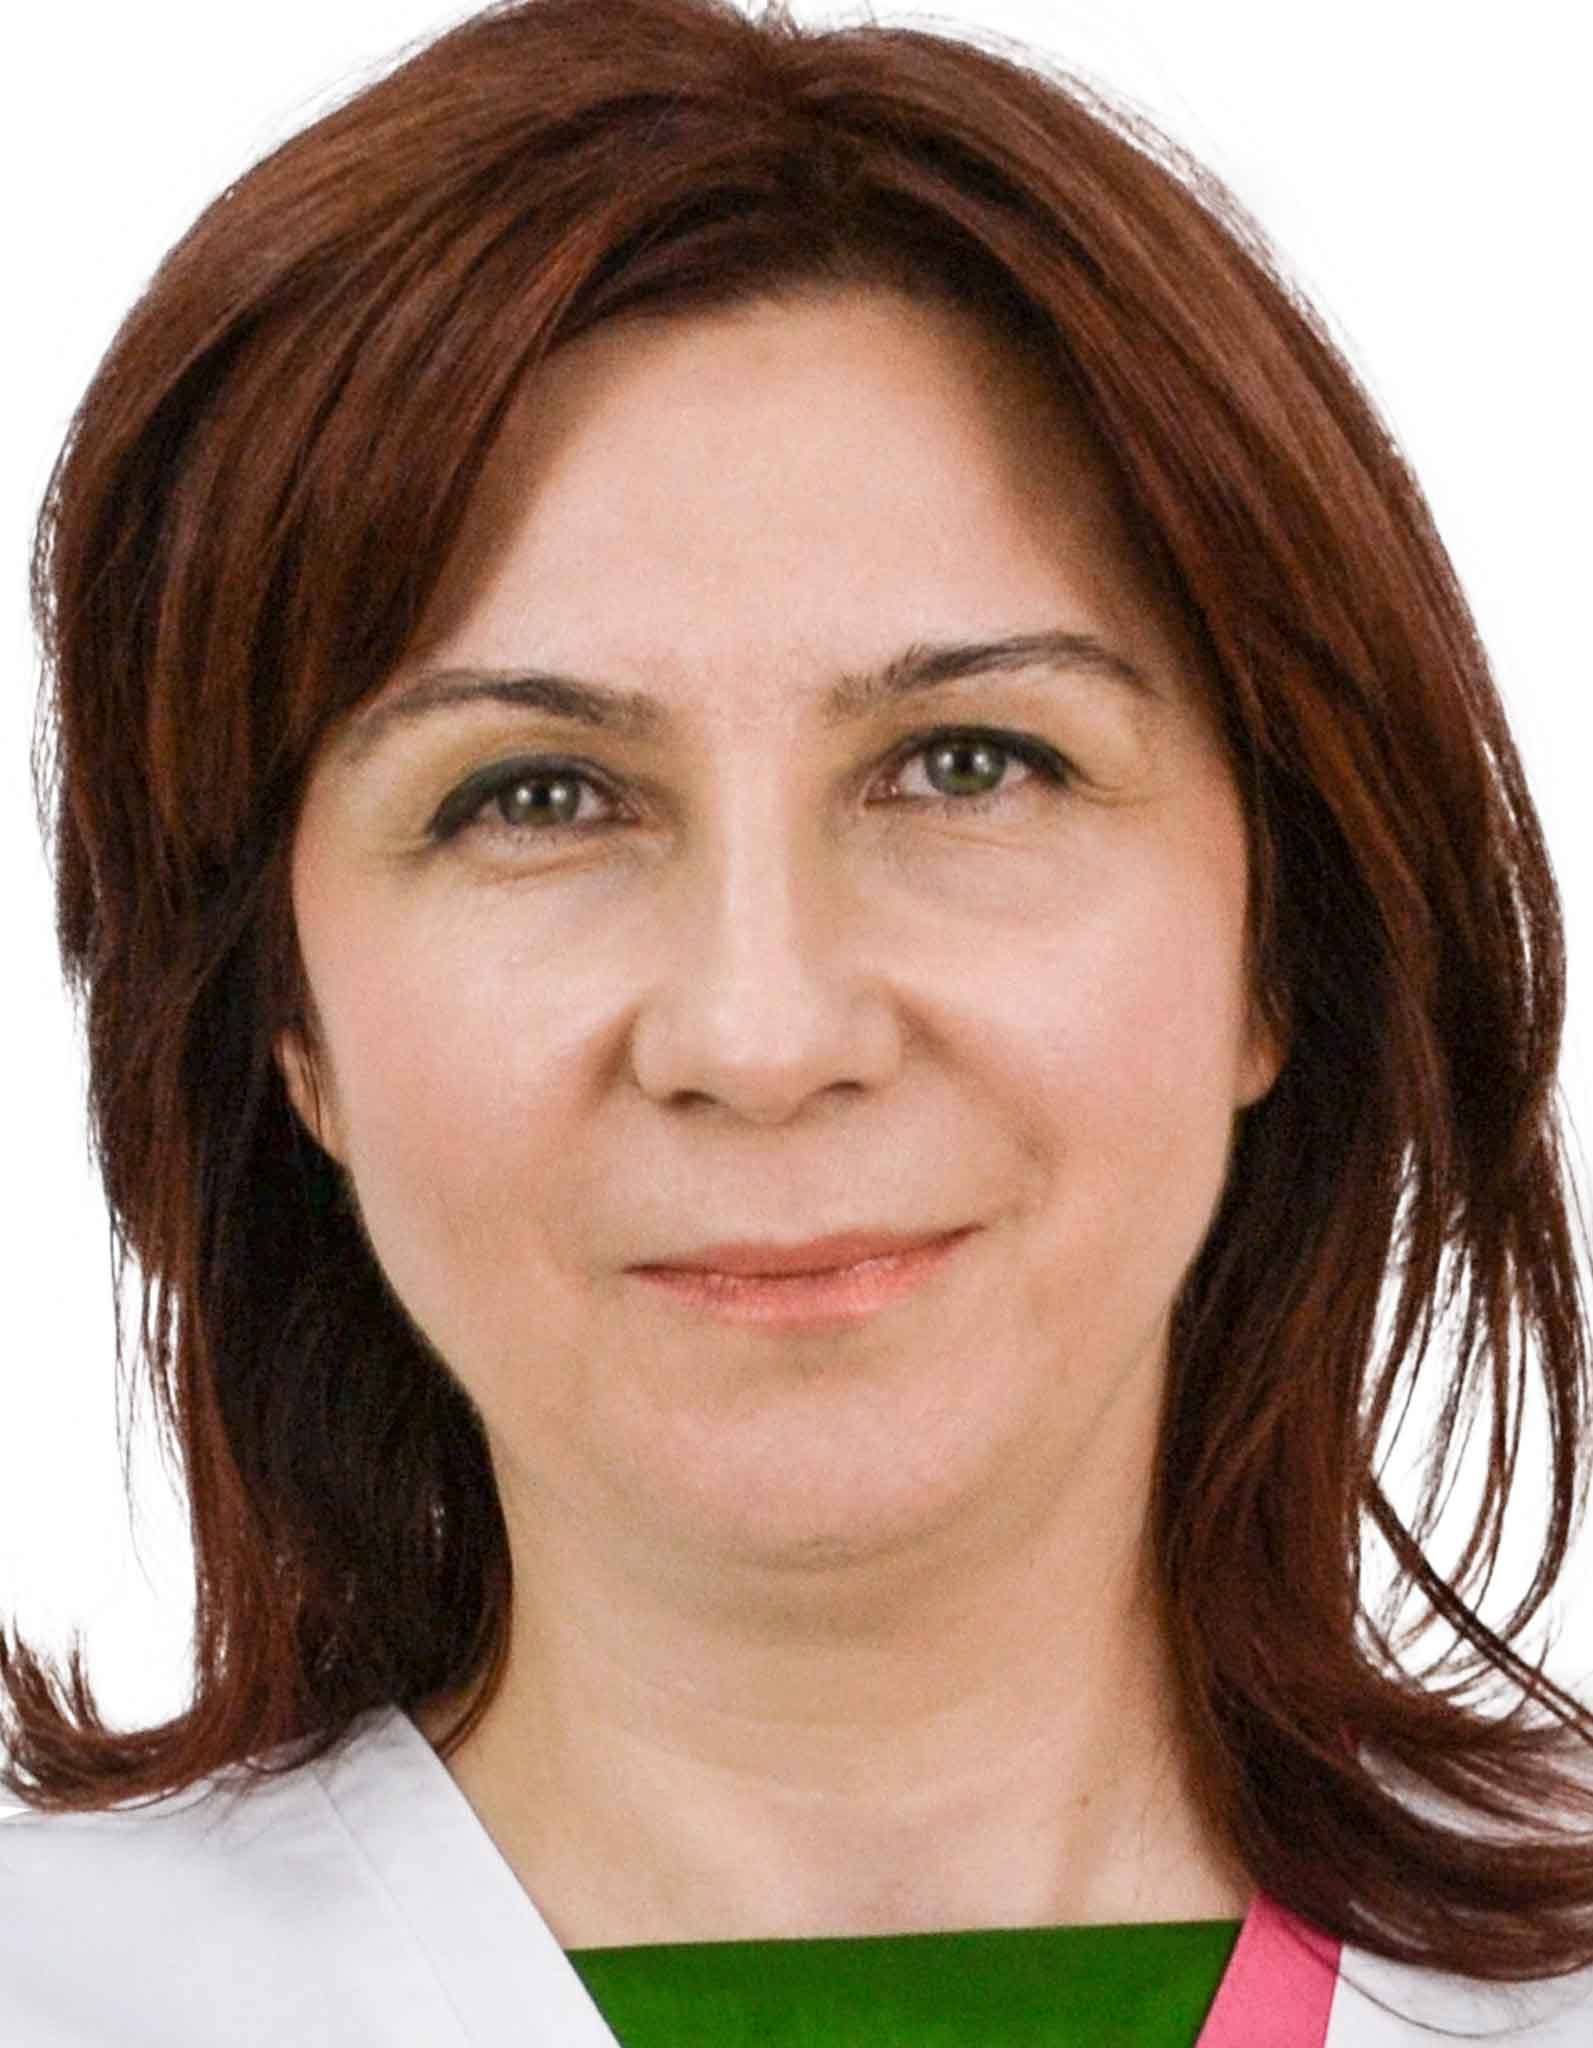 Dr. Nicole Cuturela